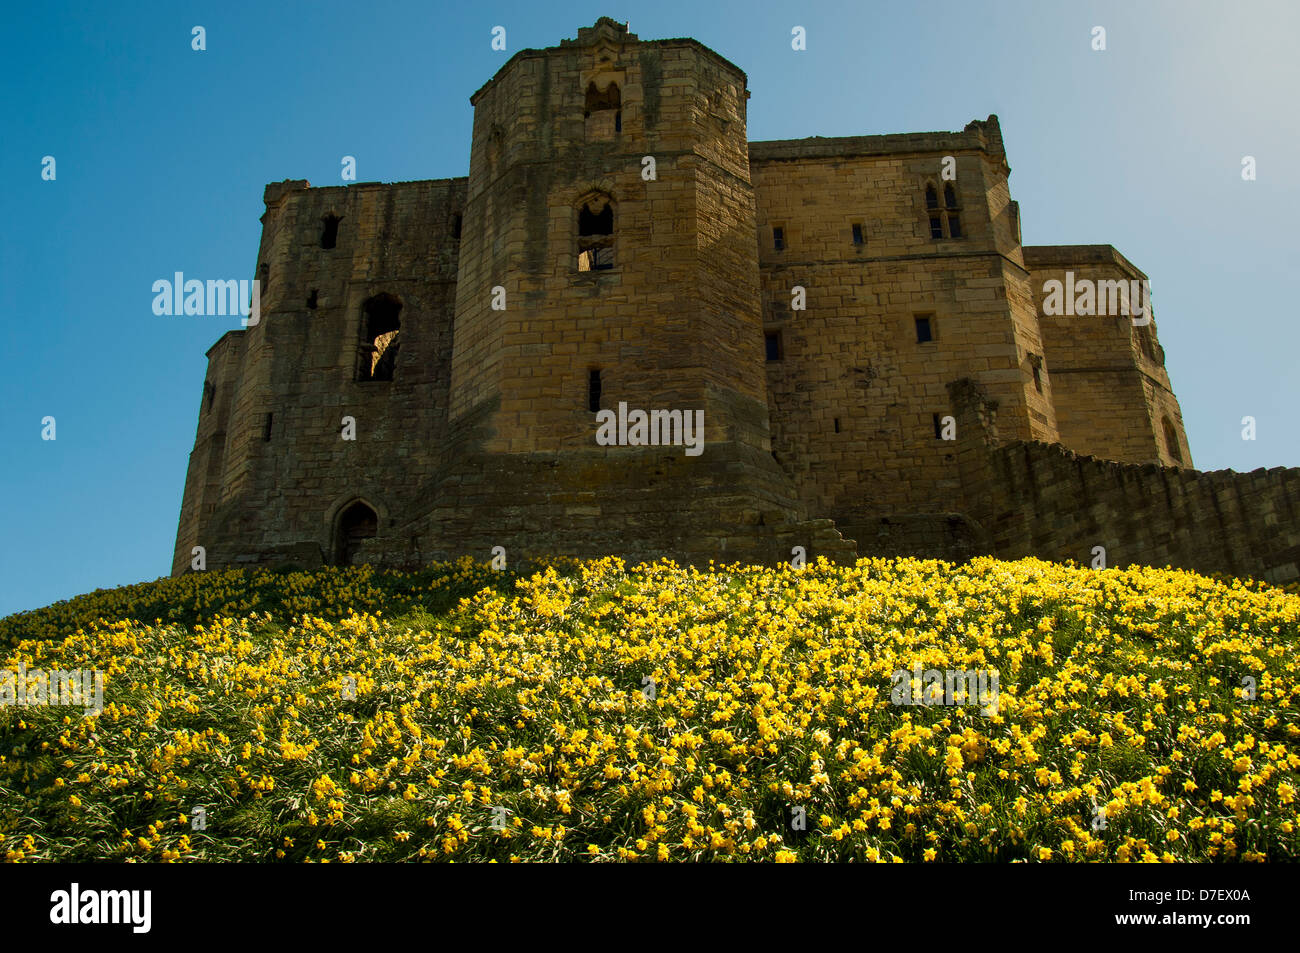 El castillo de Warkworth Foto de stock